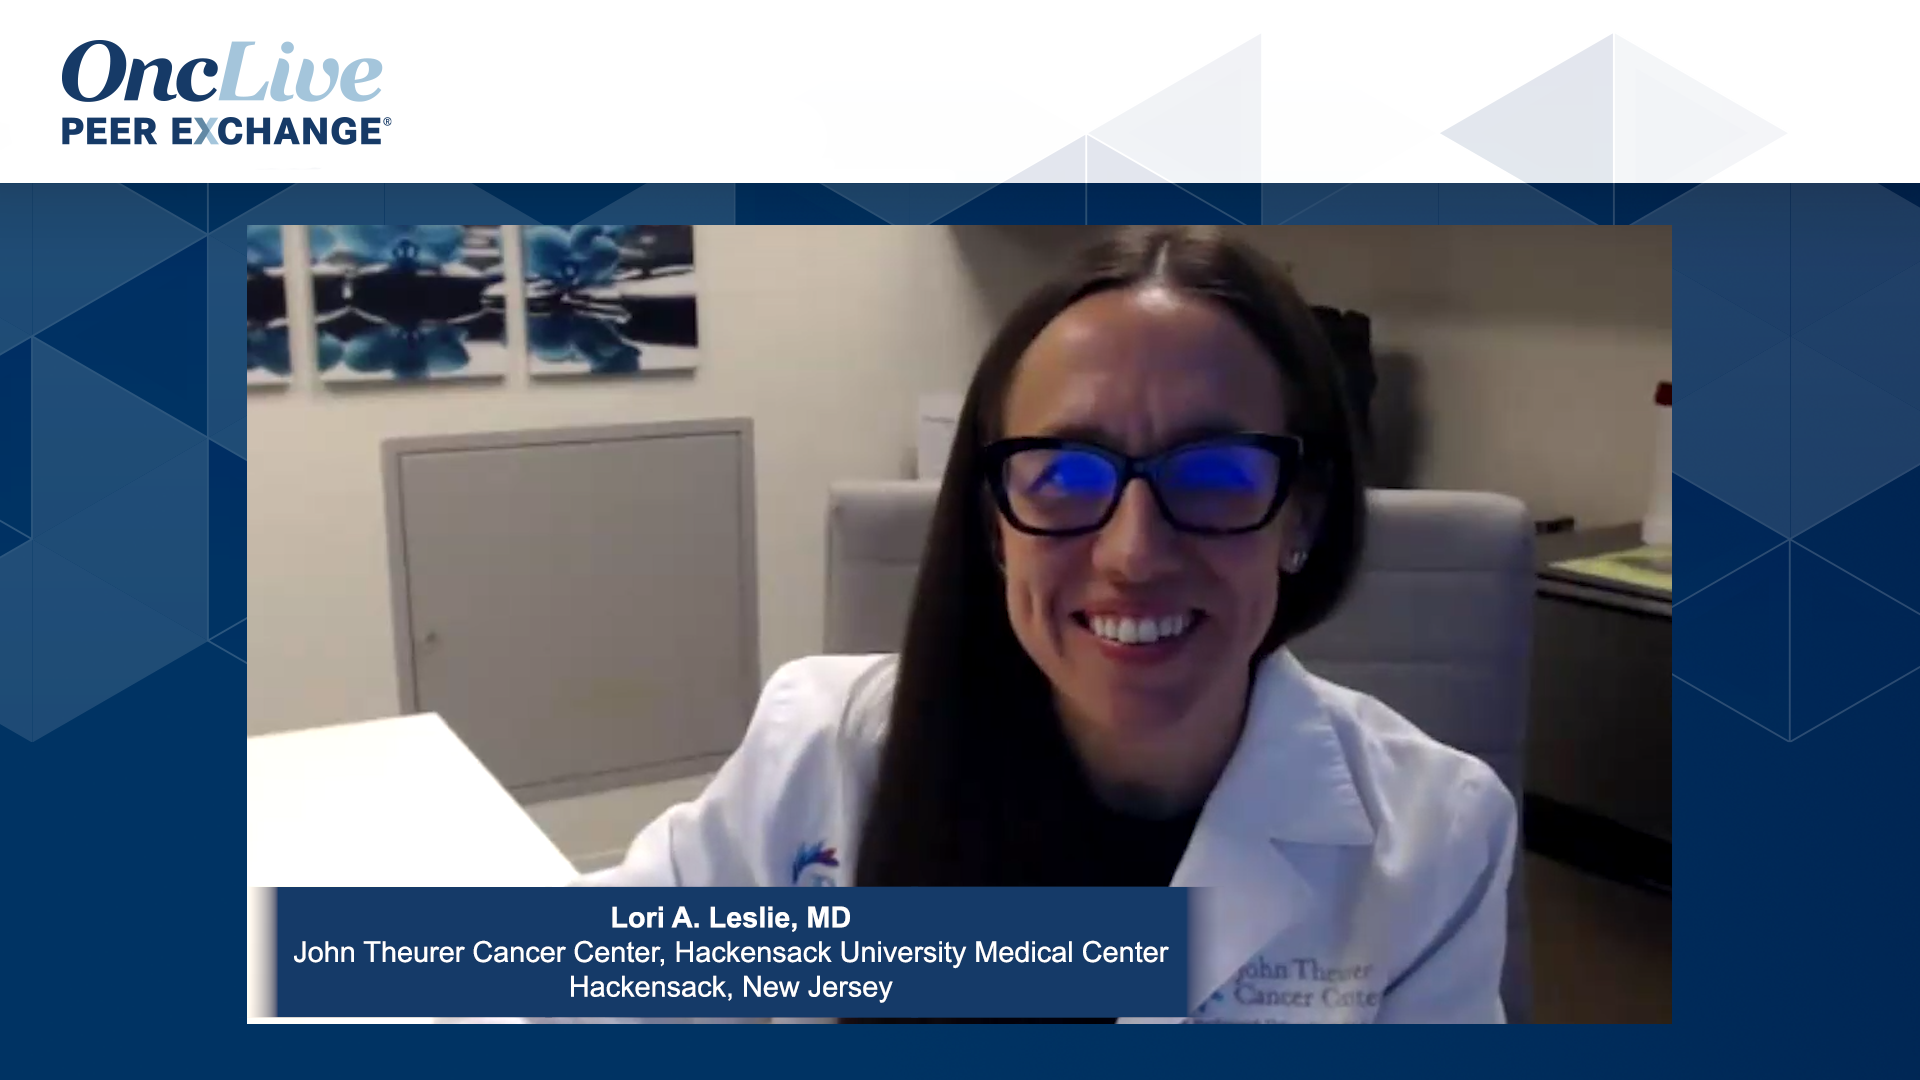 Lori A. Leslie, MD, an expert on lymphoma